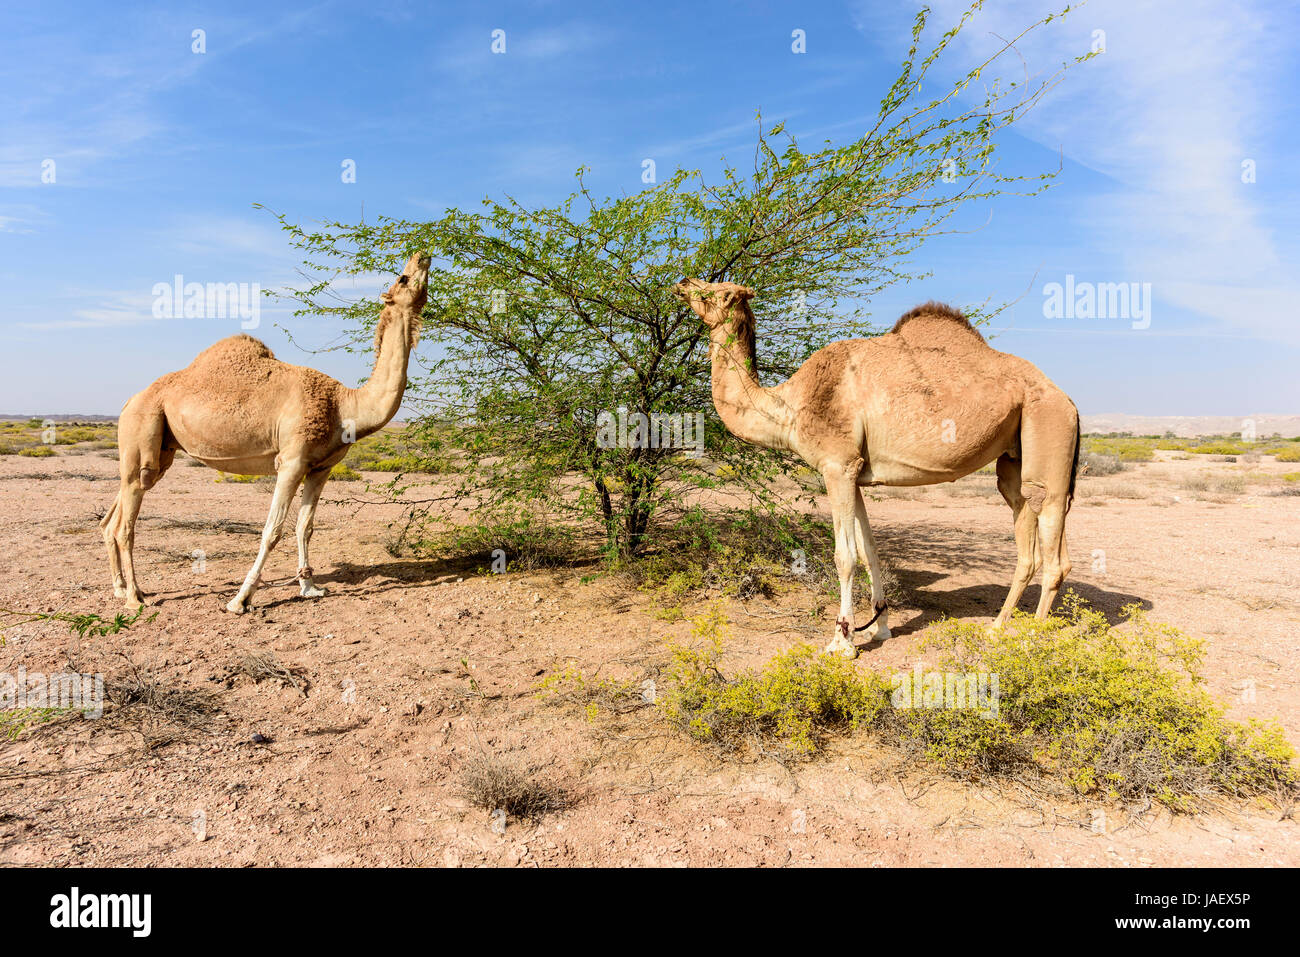 Los camellos comiendo hojas de Acacia en el bosque cerca de Ras Al hadd y Ras Al Jinz, Sultanato de Omán Foto de stock